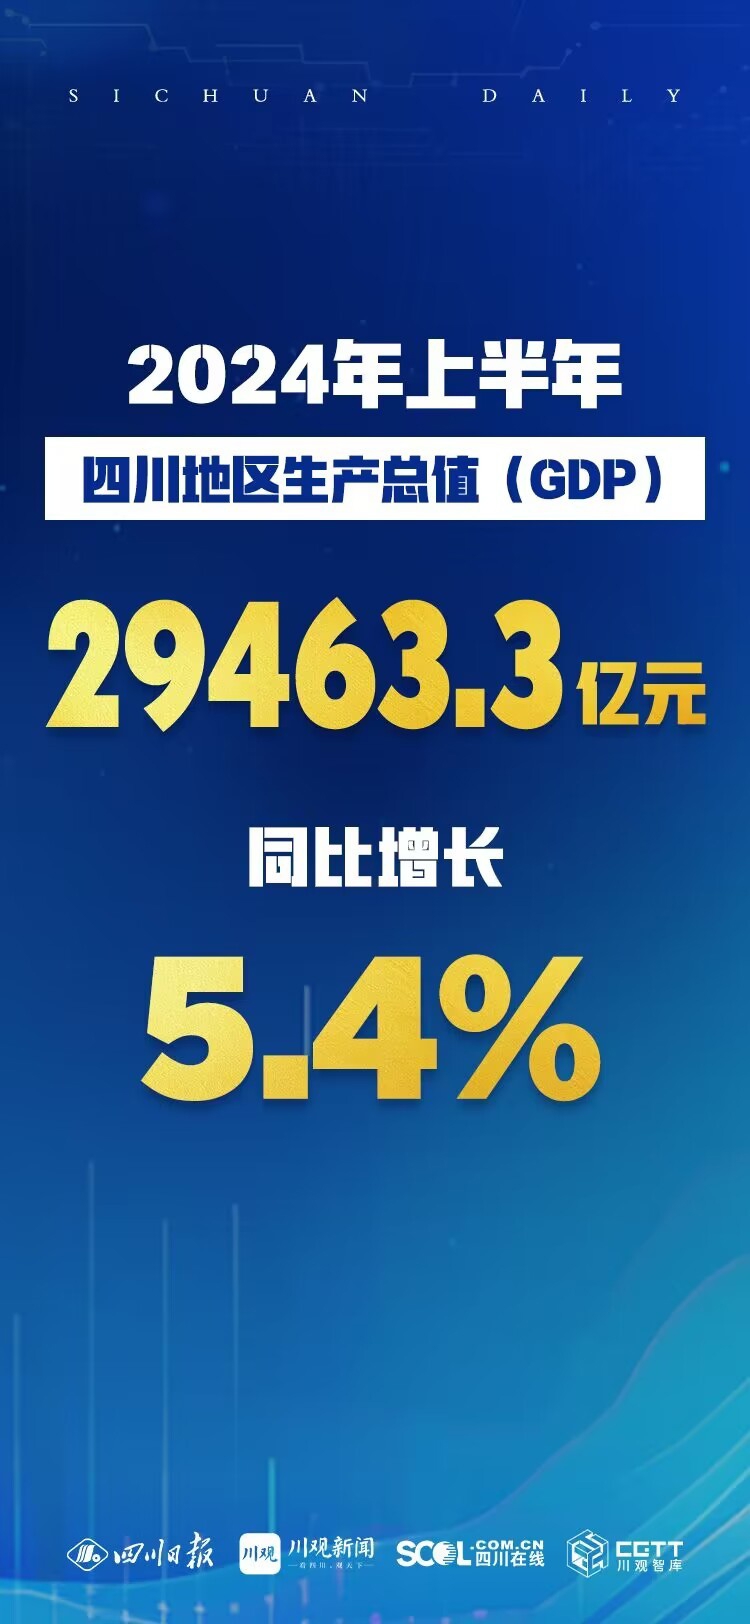 今年上半年四川gdp同比增长54% 经济运行总体平稳